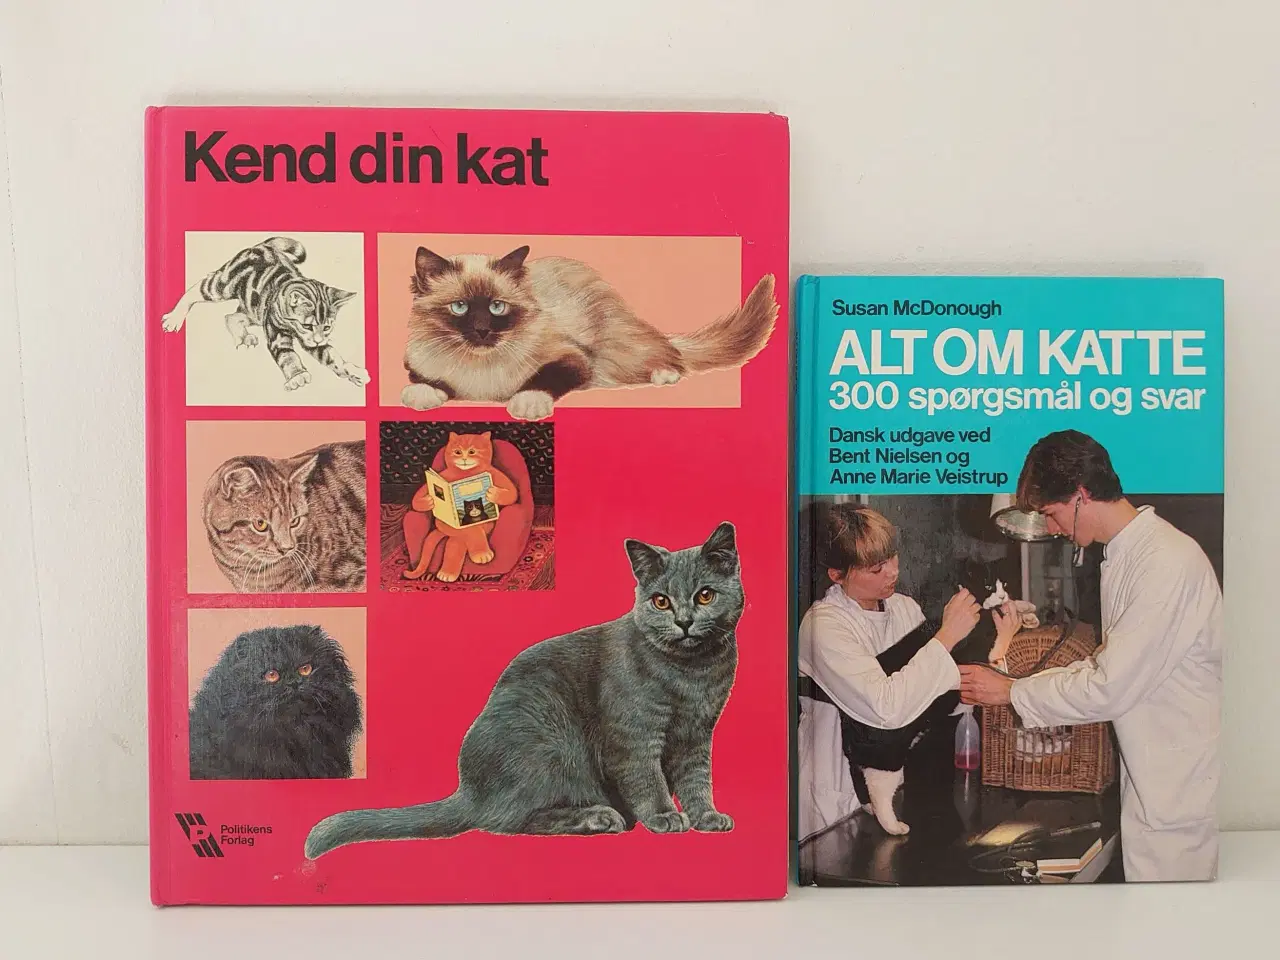 Billede 1 - 2 stk kattebøger: Kend din kat og Alt om katte.